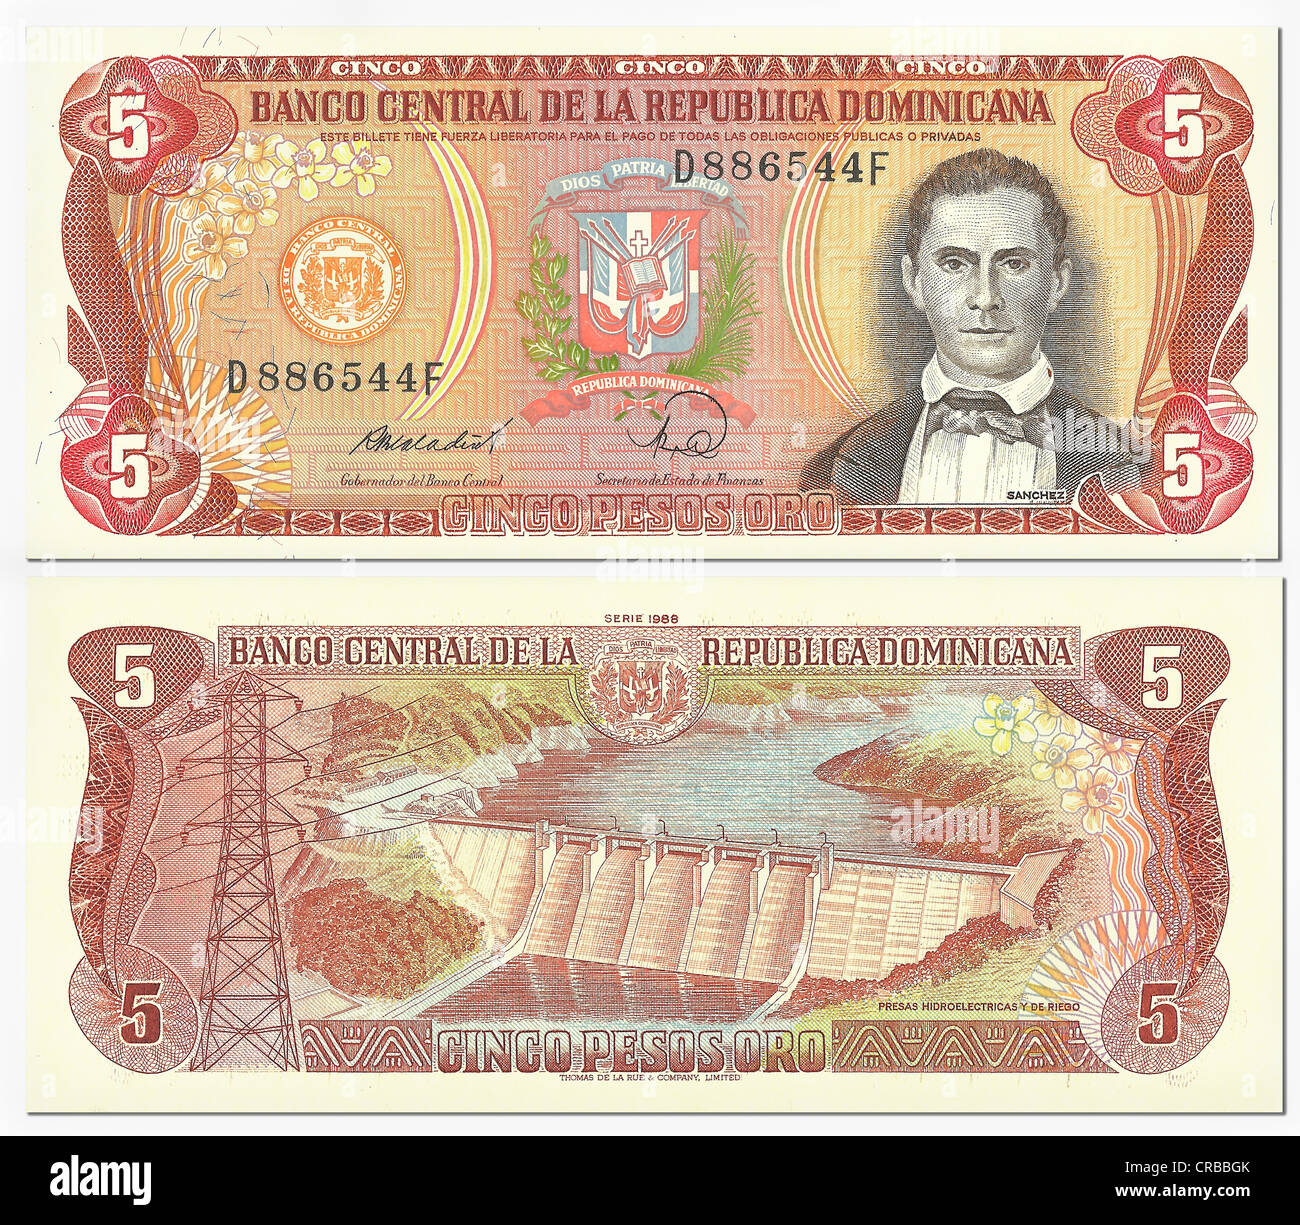 Banconota storico, anteriore e posteriore, 5 pesos oro, Repubblica Dominicana, Banco Central Republica Dominicana Foto Stock